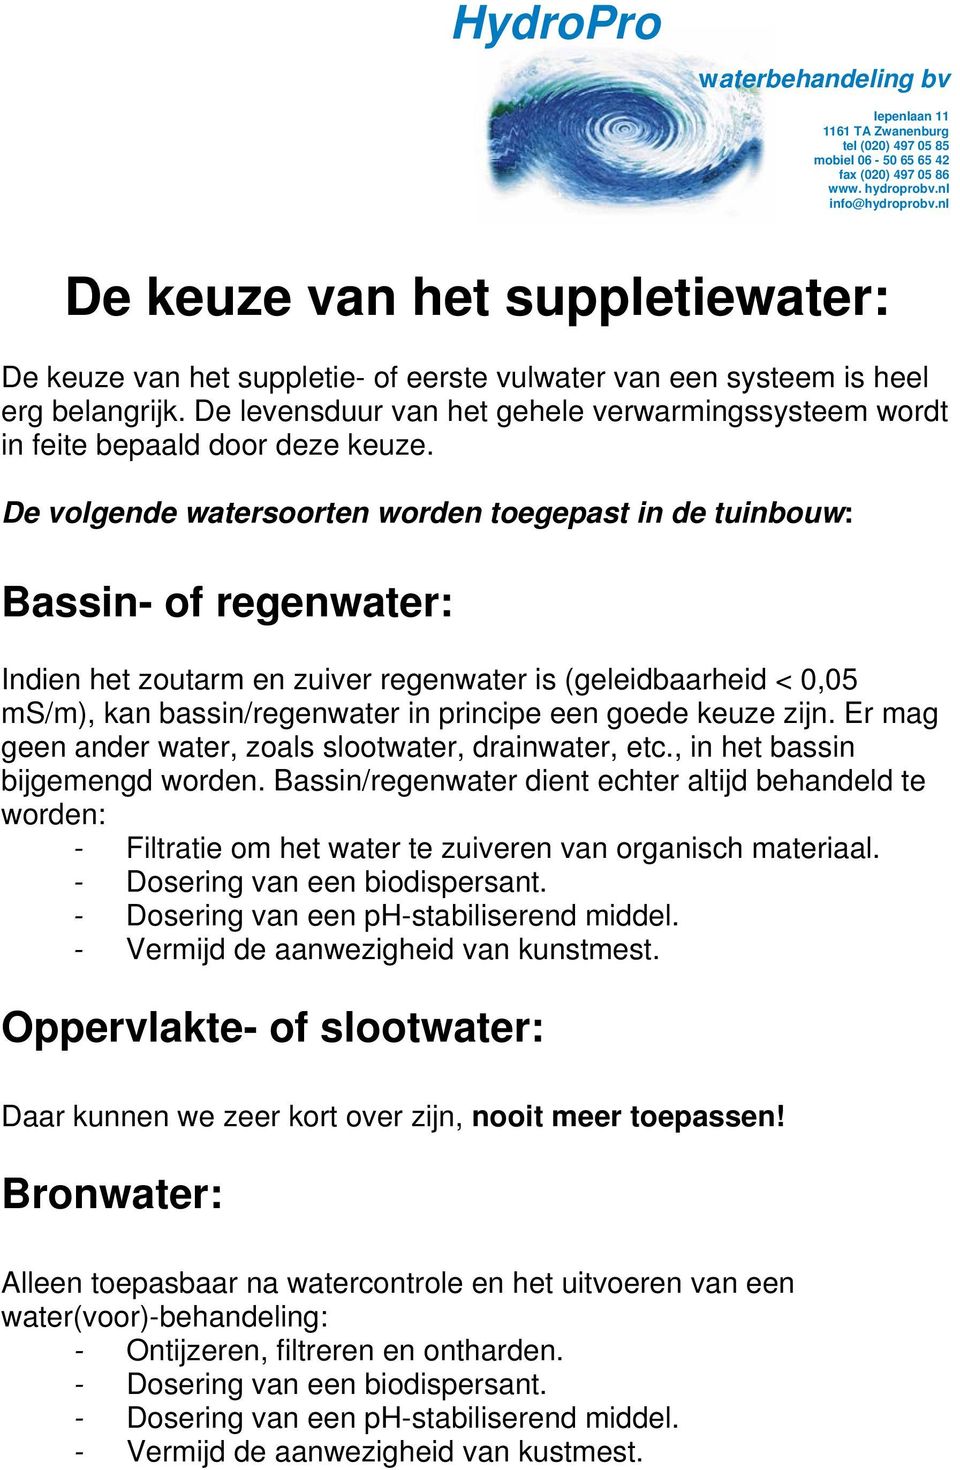 De volgende watersoorten worden toegepast in de tuinbouw: Bassin- of regenwater: Indien het zoutarm en zuiver regenwater is (geleidbaarheid < 0,05 ms/m), kan bassin/regenwater in principe een goede